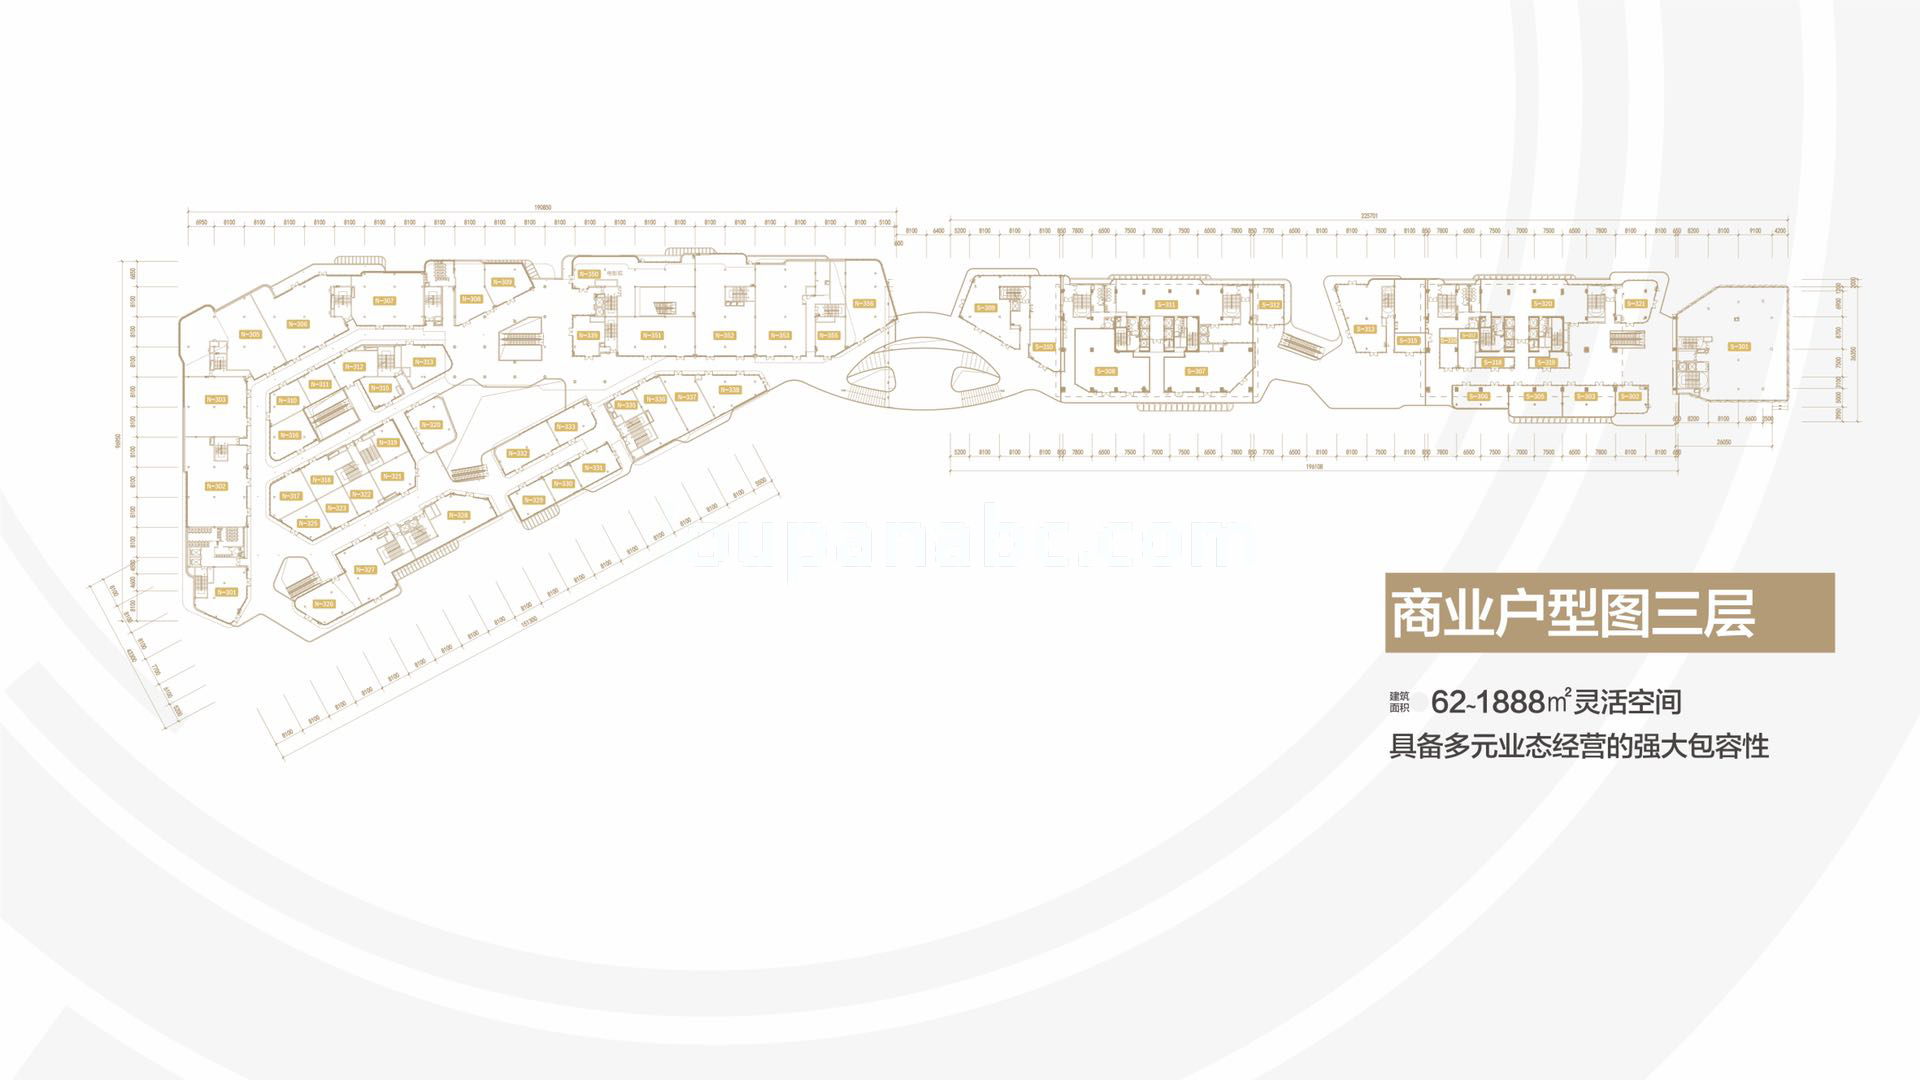 雅居乐中心 独立商业 三层平面图 建面62-1888㎡